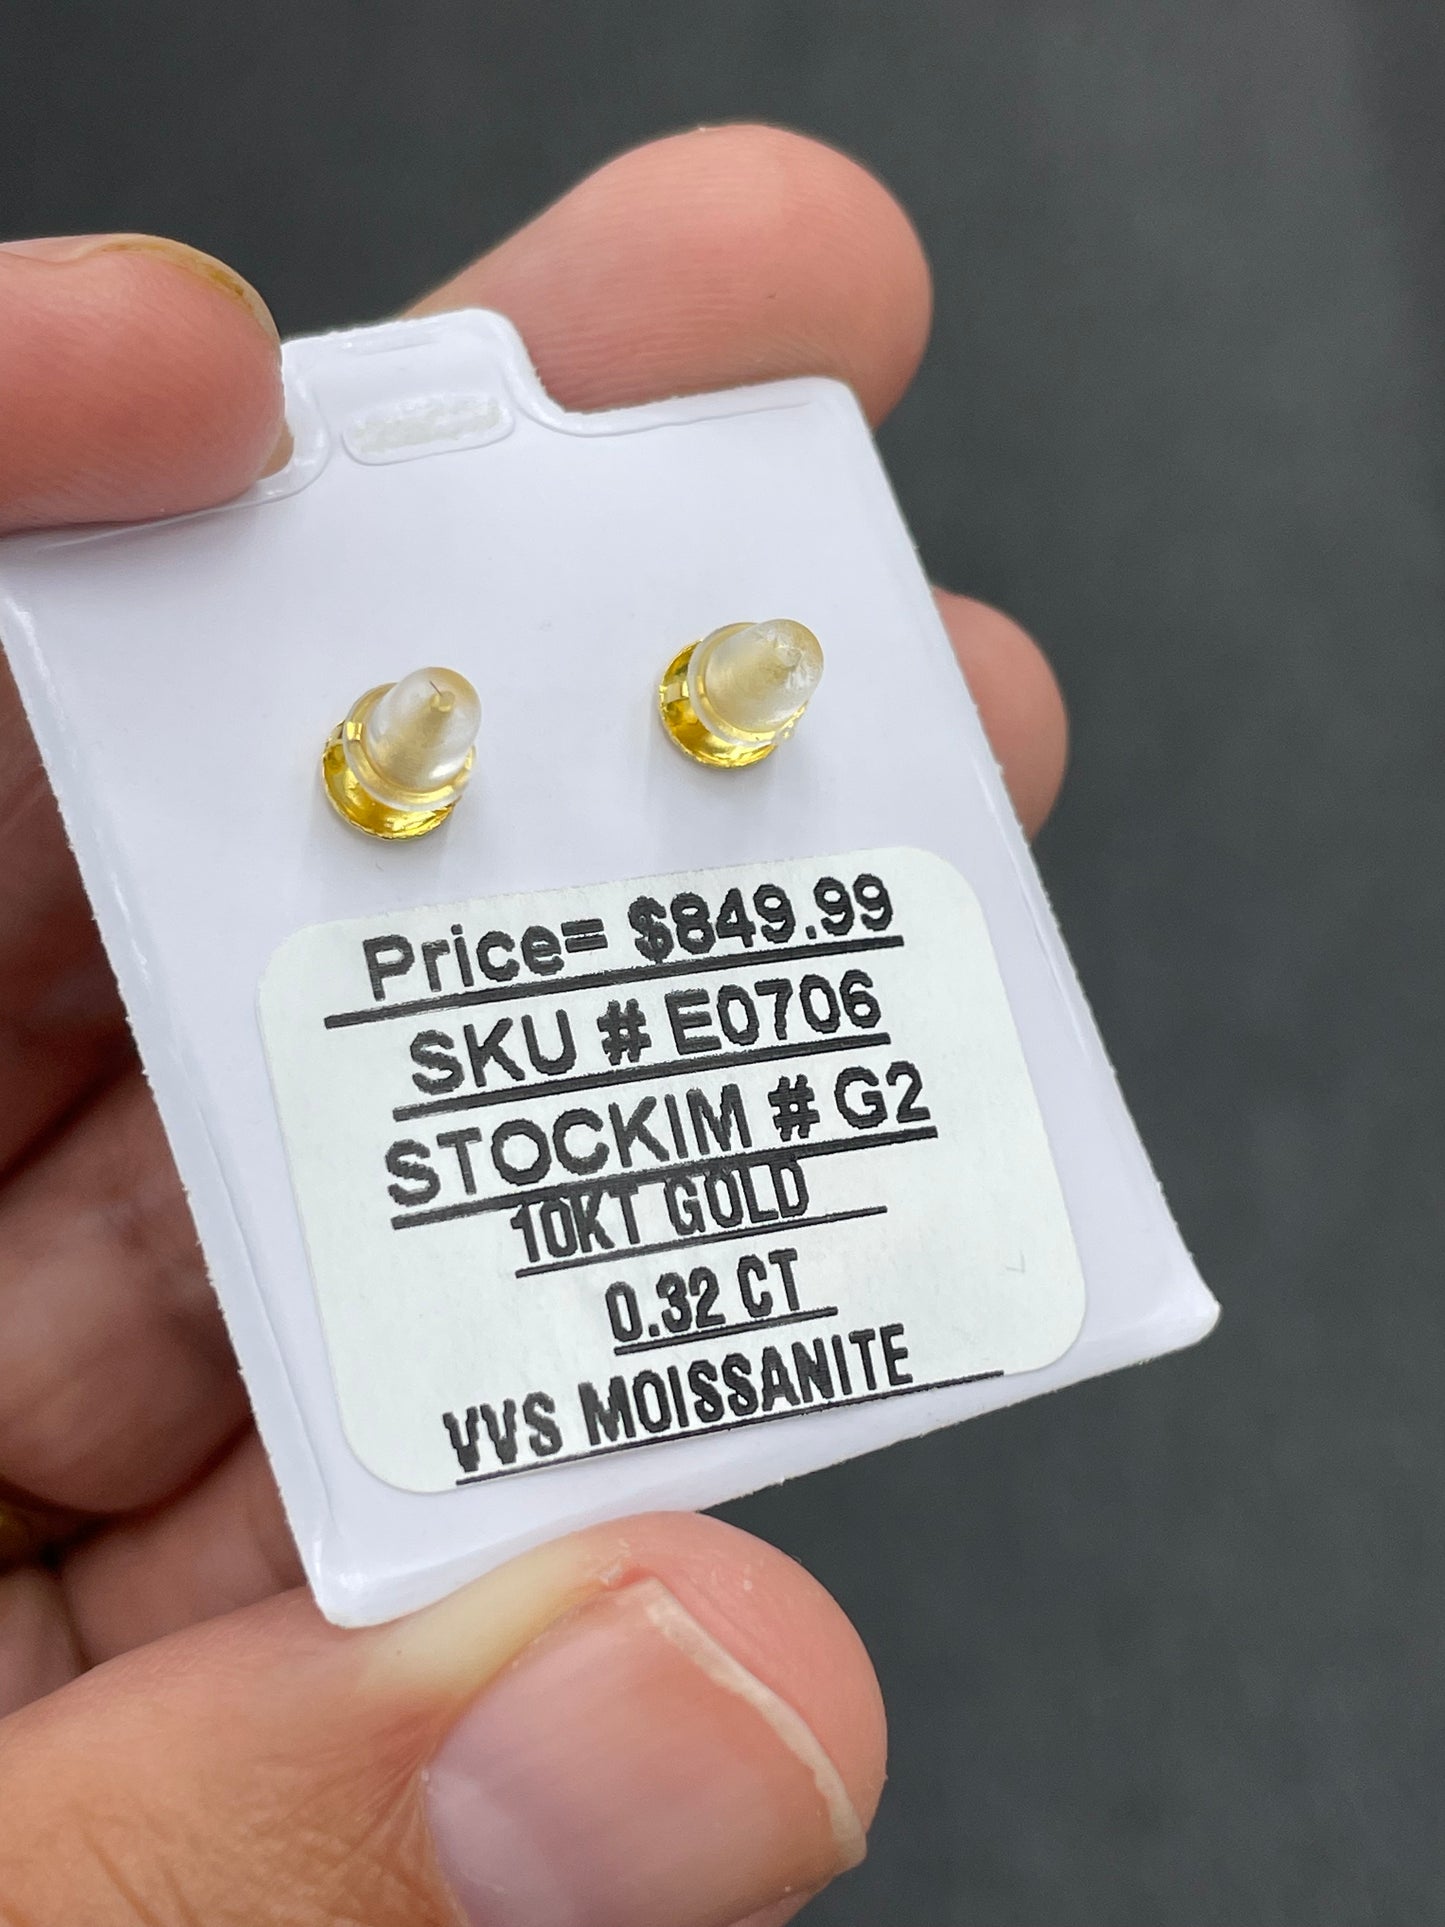 10k gold vvs moissanite  earrings